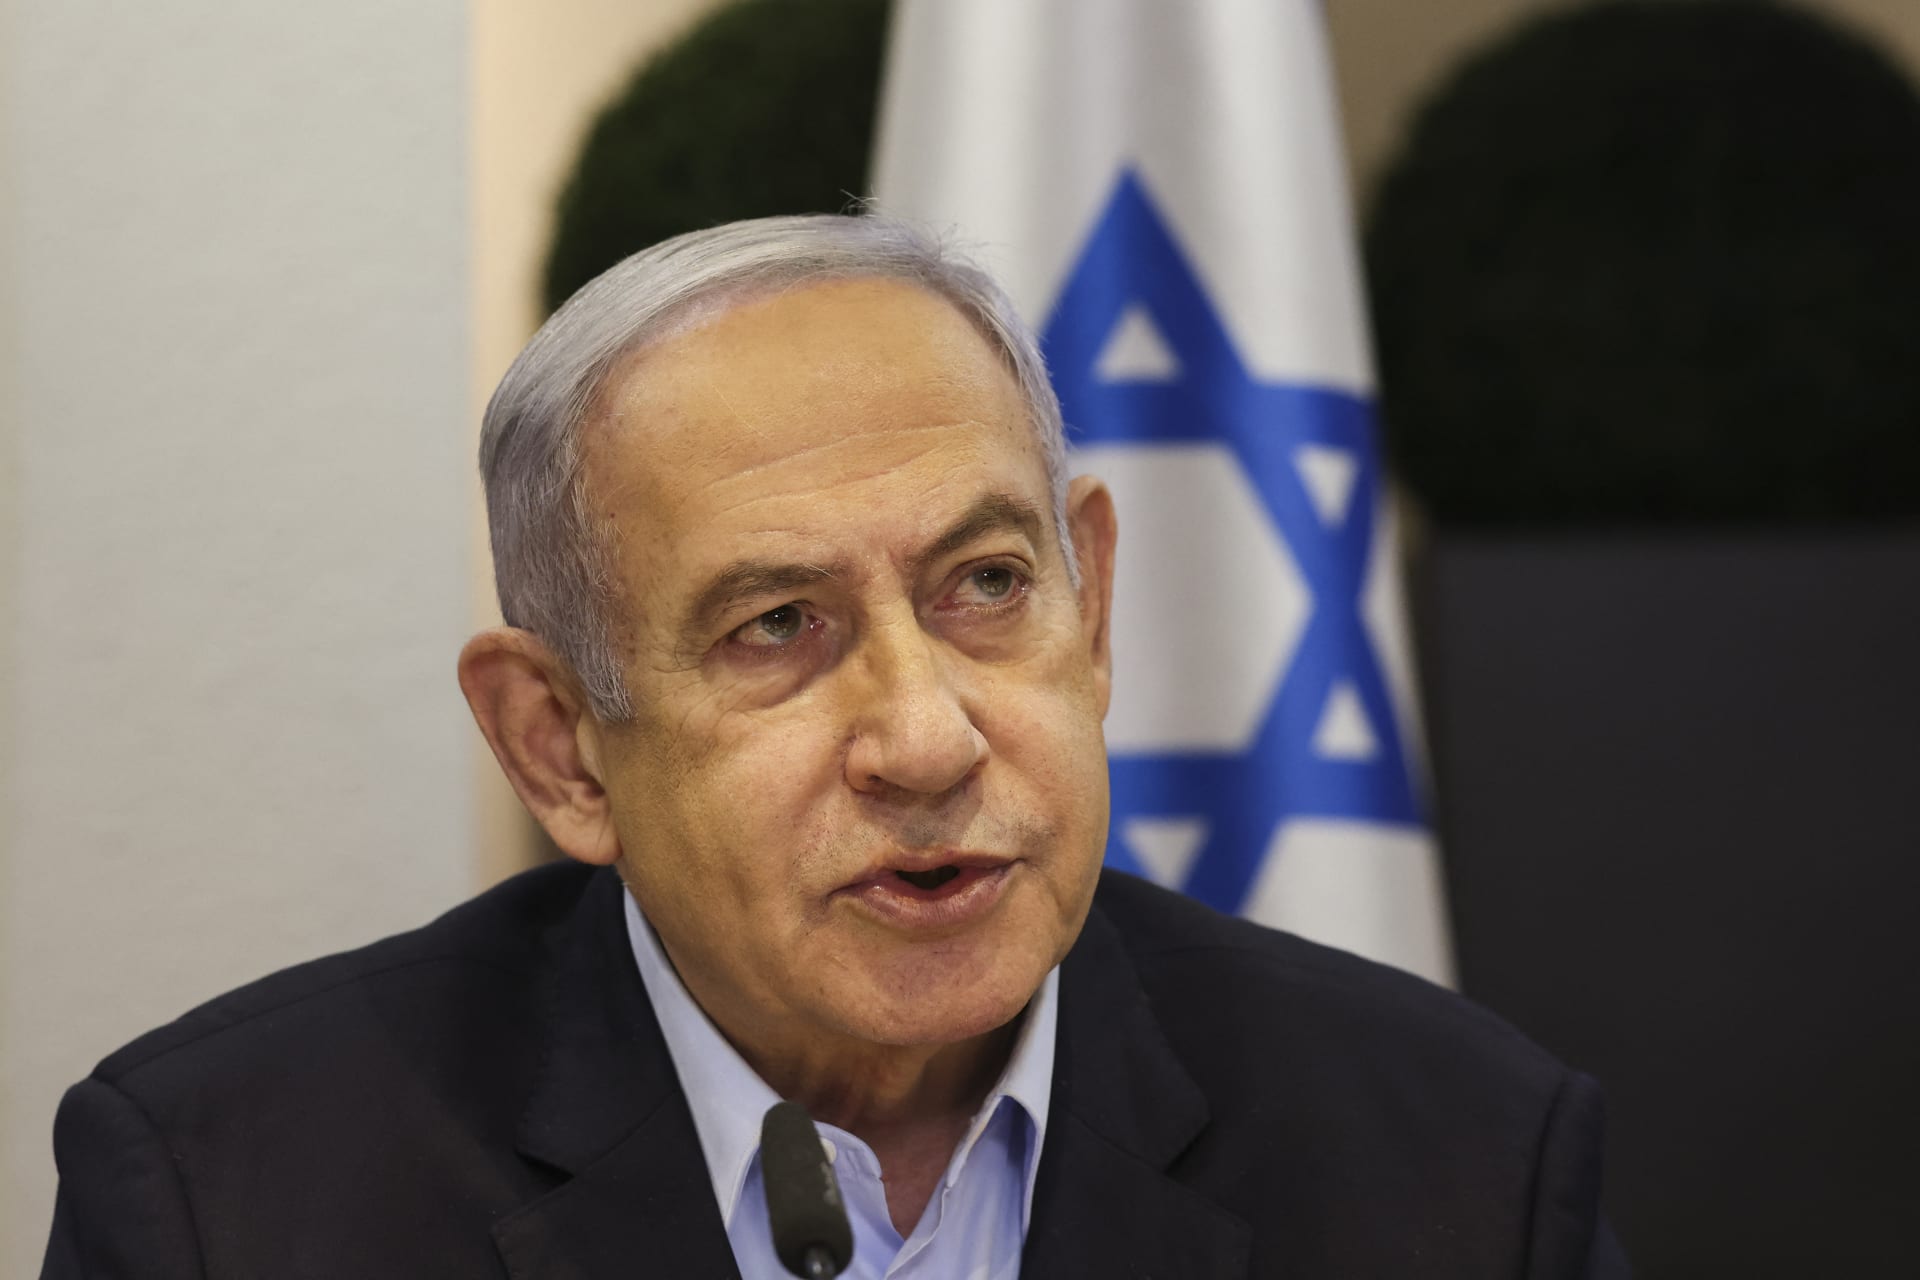 الحكومة الإسرائيلية تؤيد بالإجماع قرارا يرفض "الإملاءات الدولية" حول التسوية الدائمة مع الفلسطينيين